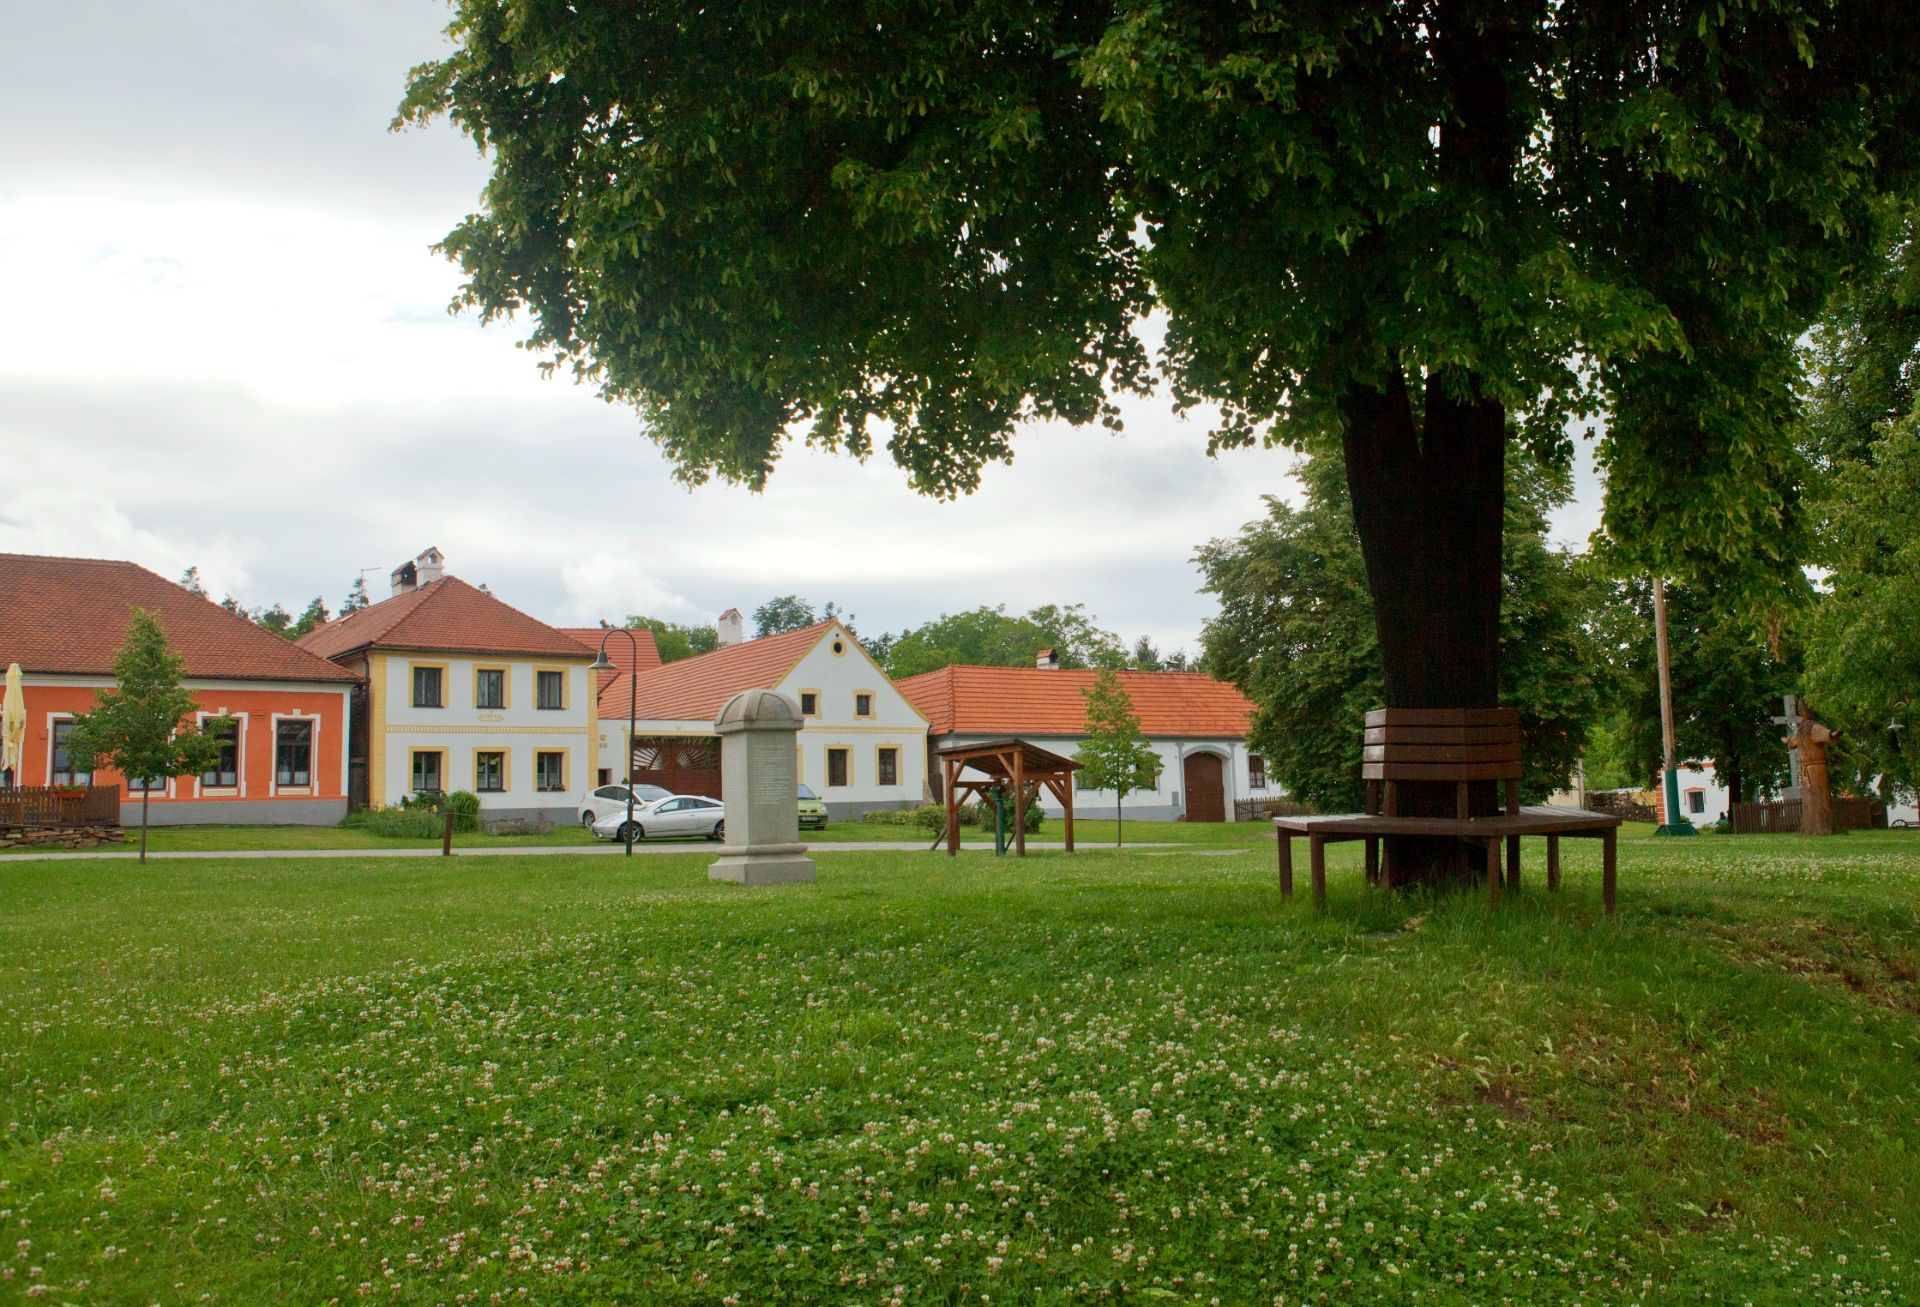 捷克霍拉肖维采古老村落是完美无缺地保留下来的欧洲中部传统村落的一个罕见标本。它拥有一个自18和19世